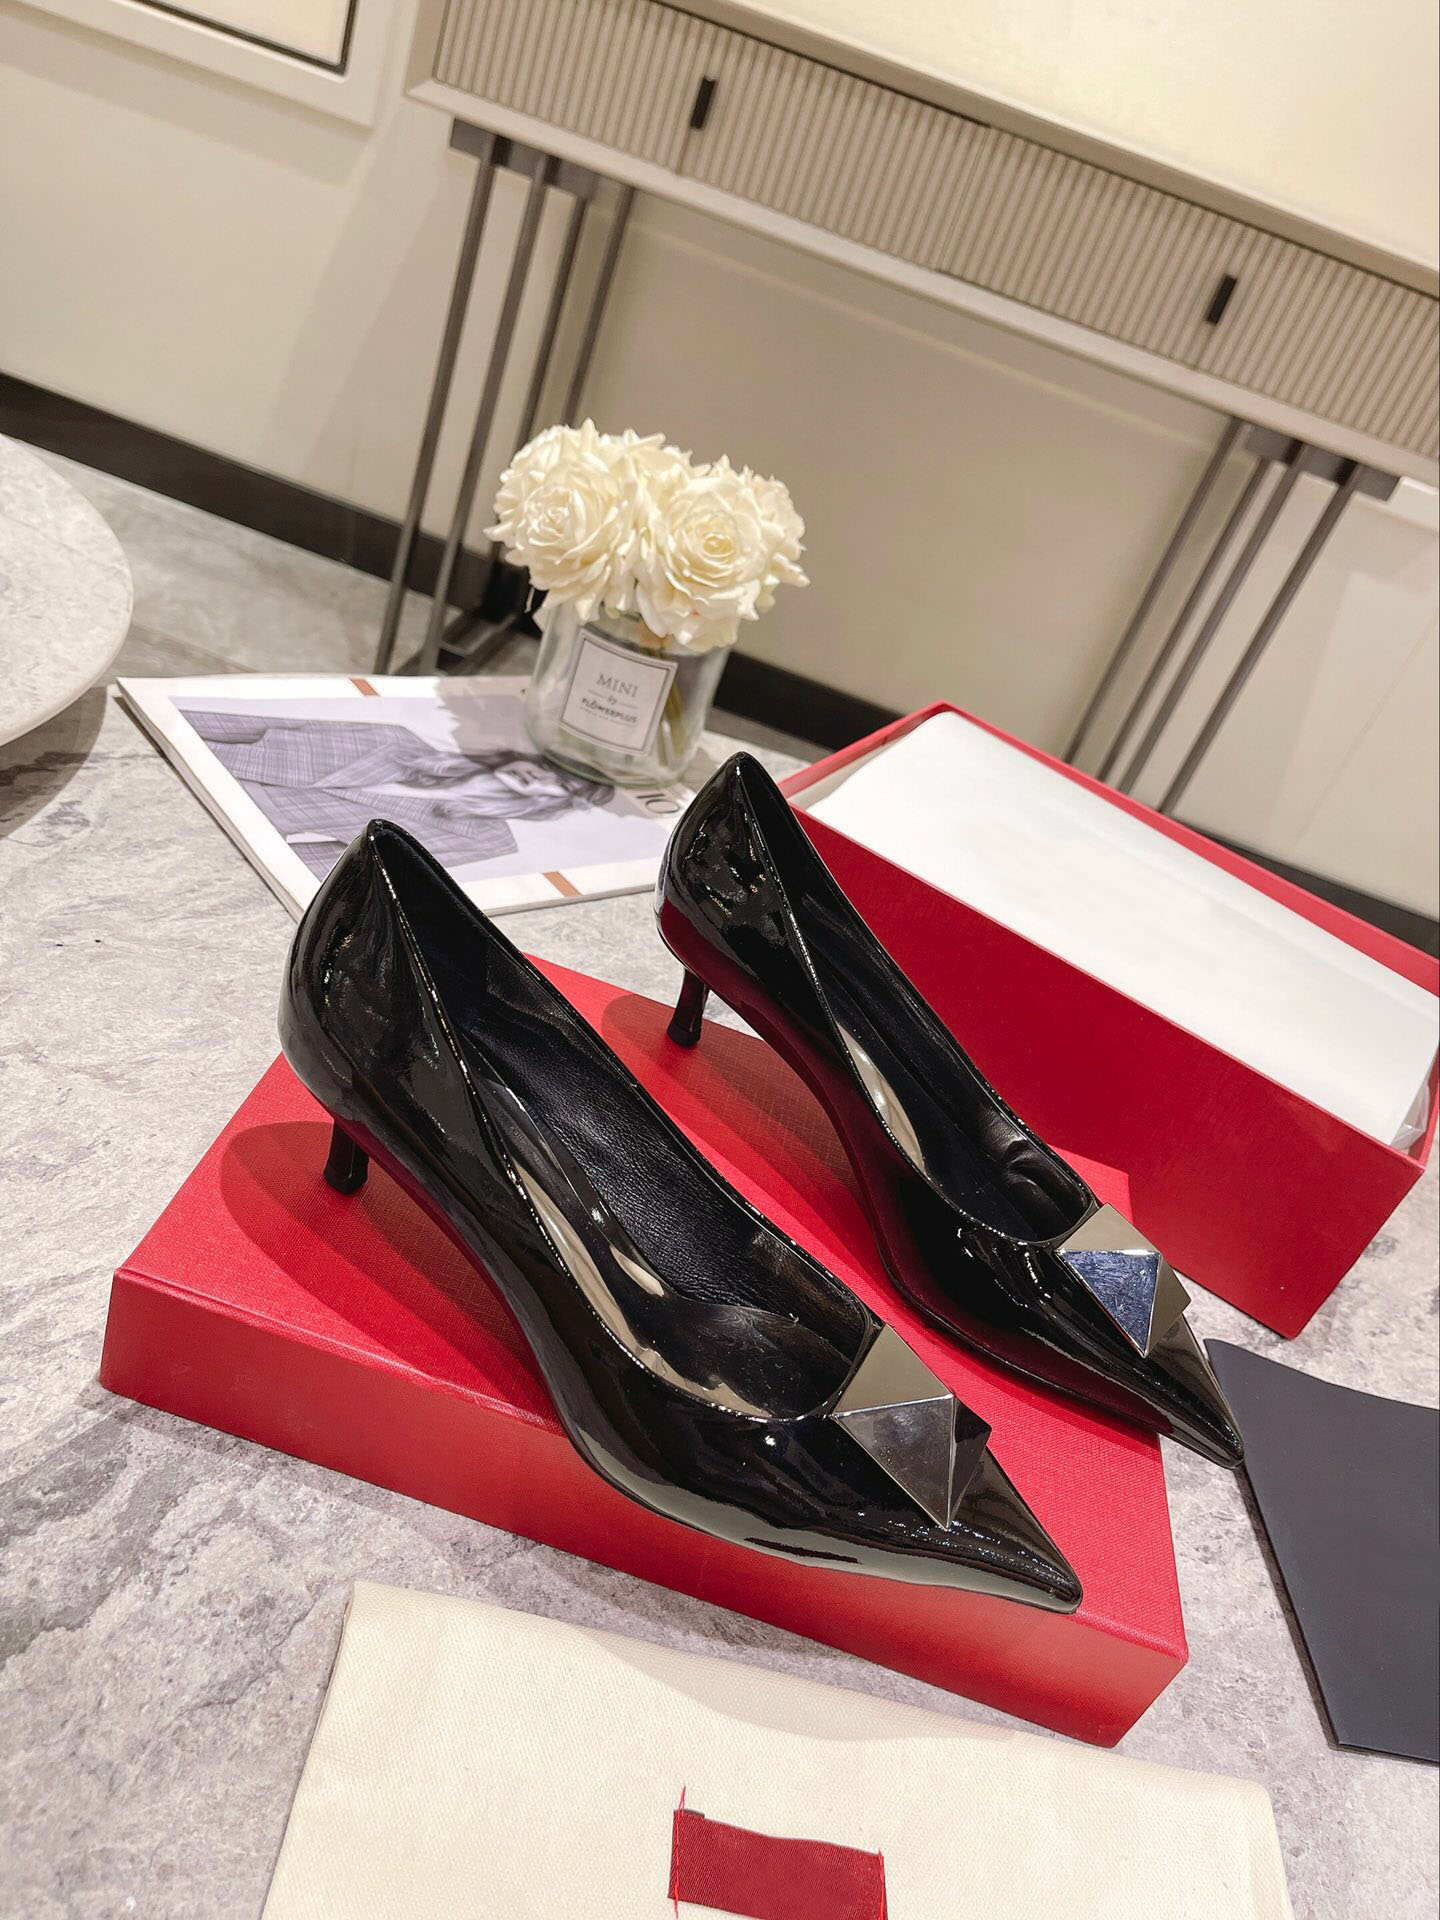 نيو نساء اللباس أحذية المكتب الرسمي المدببة إصبع القدم مضخات مصممة العلامة التجارية للسيدات البسيط حفل زفاف مثير الأحذية أحذية الحجم 34-42